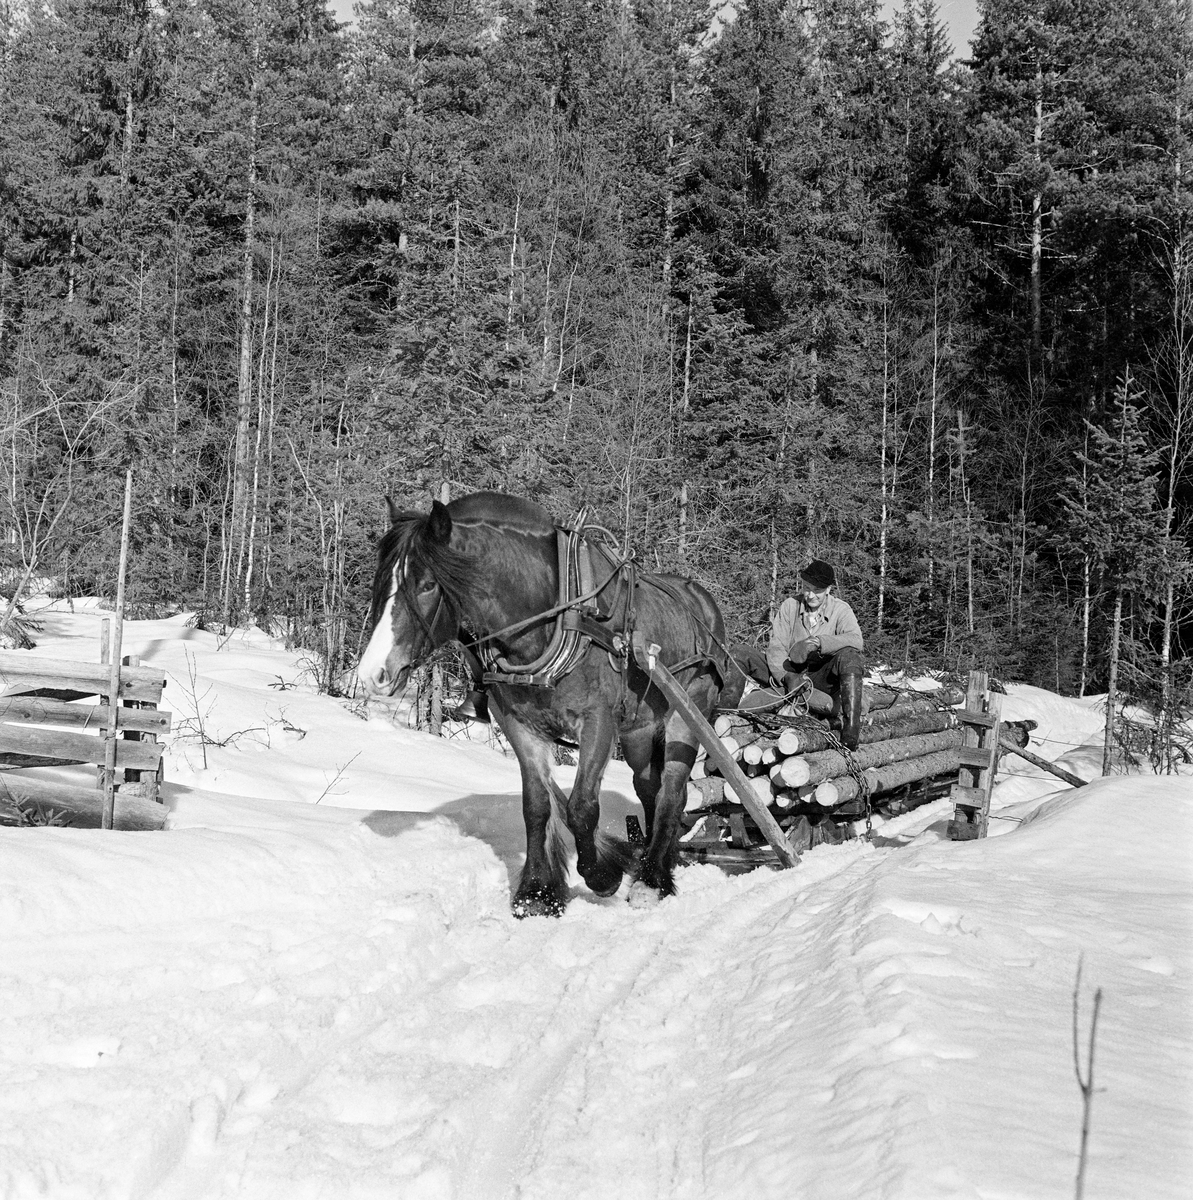 Jørgen Larsen (1919-1988) fra Hernes i Elverum, fotografert under tømmerkjøring med hest i Stavåsen vinteren 1971.  Her er det en dølahest som trekker et forholdsvis stort lass med ubarket grantømmer på en tømmerrustning – en toleddet tømmerslede, som også ble kalt «bukk og geit».  Bildet er tatt idet den går gjennom en åpning i et gjerde – fra skogkledd utmark mot innmark.  Denne hesten hadde bogtresele med ei stoppet ringpute, som er tredd over hodet på dyret slik at den ligger an mot nakken og bringen på trekkdyret.  Derfra går det kraftige drotter (draglær) til orringen, som er plassert i krysningspunktet mellom bukgjorden, bærereimene fra høvret og bakselen.  Bakselen, som ble ført horisontalt fra orringene bakover sidene og rundt øvre del av lårene, var nødvendig for at hesten skulle kunne «holde igjen» i utforbakker.  Hesten ble styrt ved hjelp av tømmer, som er forankret i et munnbitt.  Tømmene ble ført gjennom ringene på høvret, og de var så lange at kjørekaren kunne betjene dem fra en posisjon på tømmerlasset.  På den ene skåka (trekkstanga mellom seletøyet og fronten på sleden) var det festet ei bjelle – «Mora-vekke» - slik at folk skulle høre når det kom en hest med tungt lass på de smale kjørevegene.  Her ble det brukt rustning, og kjørekaren styrte hesten fra en sittende posisjon på den fremre delen av tømmerlasset.  Jørgen Larsen var kledd i mørke vadmelsbukser og lys vindjakke.  Han hadde langskaftete gummistøvler på beina og skjoldlue på hodet.